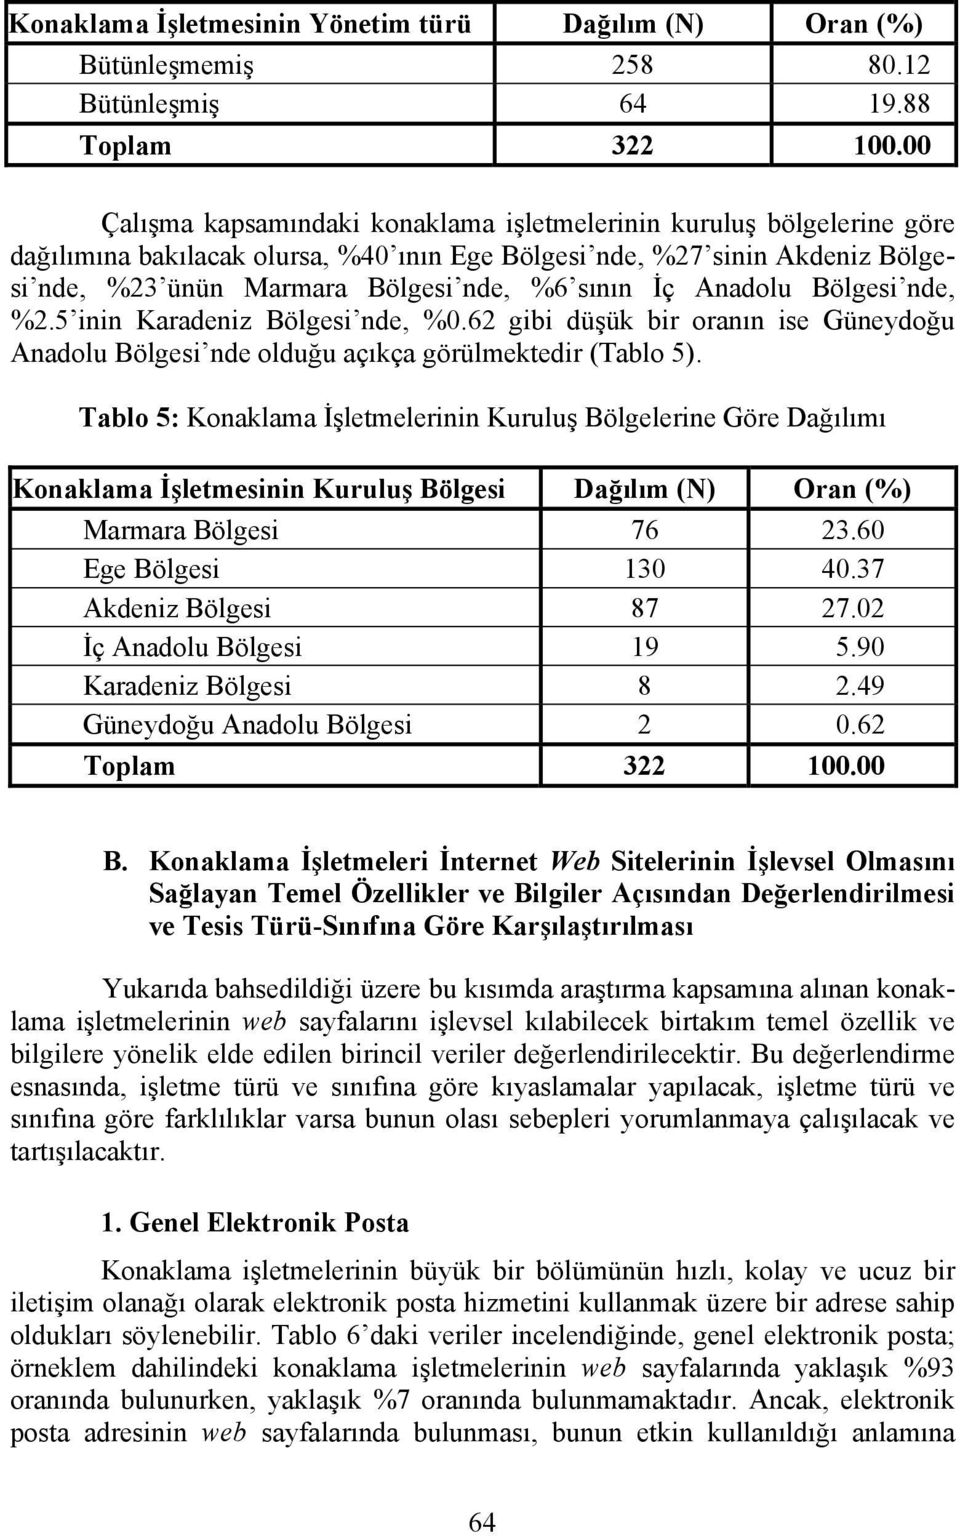 İç Anadolu Bölgesi nde, %2.5 inin Karadeniz Bölgesi nde, %0.62 gibi düşük bir oranın ise Güneydoğu Anadolu Bölgesi nde olduğu açıkça görülmektedir (Tablo 5).